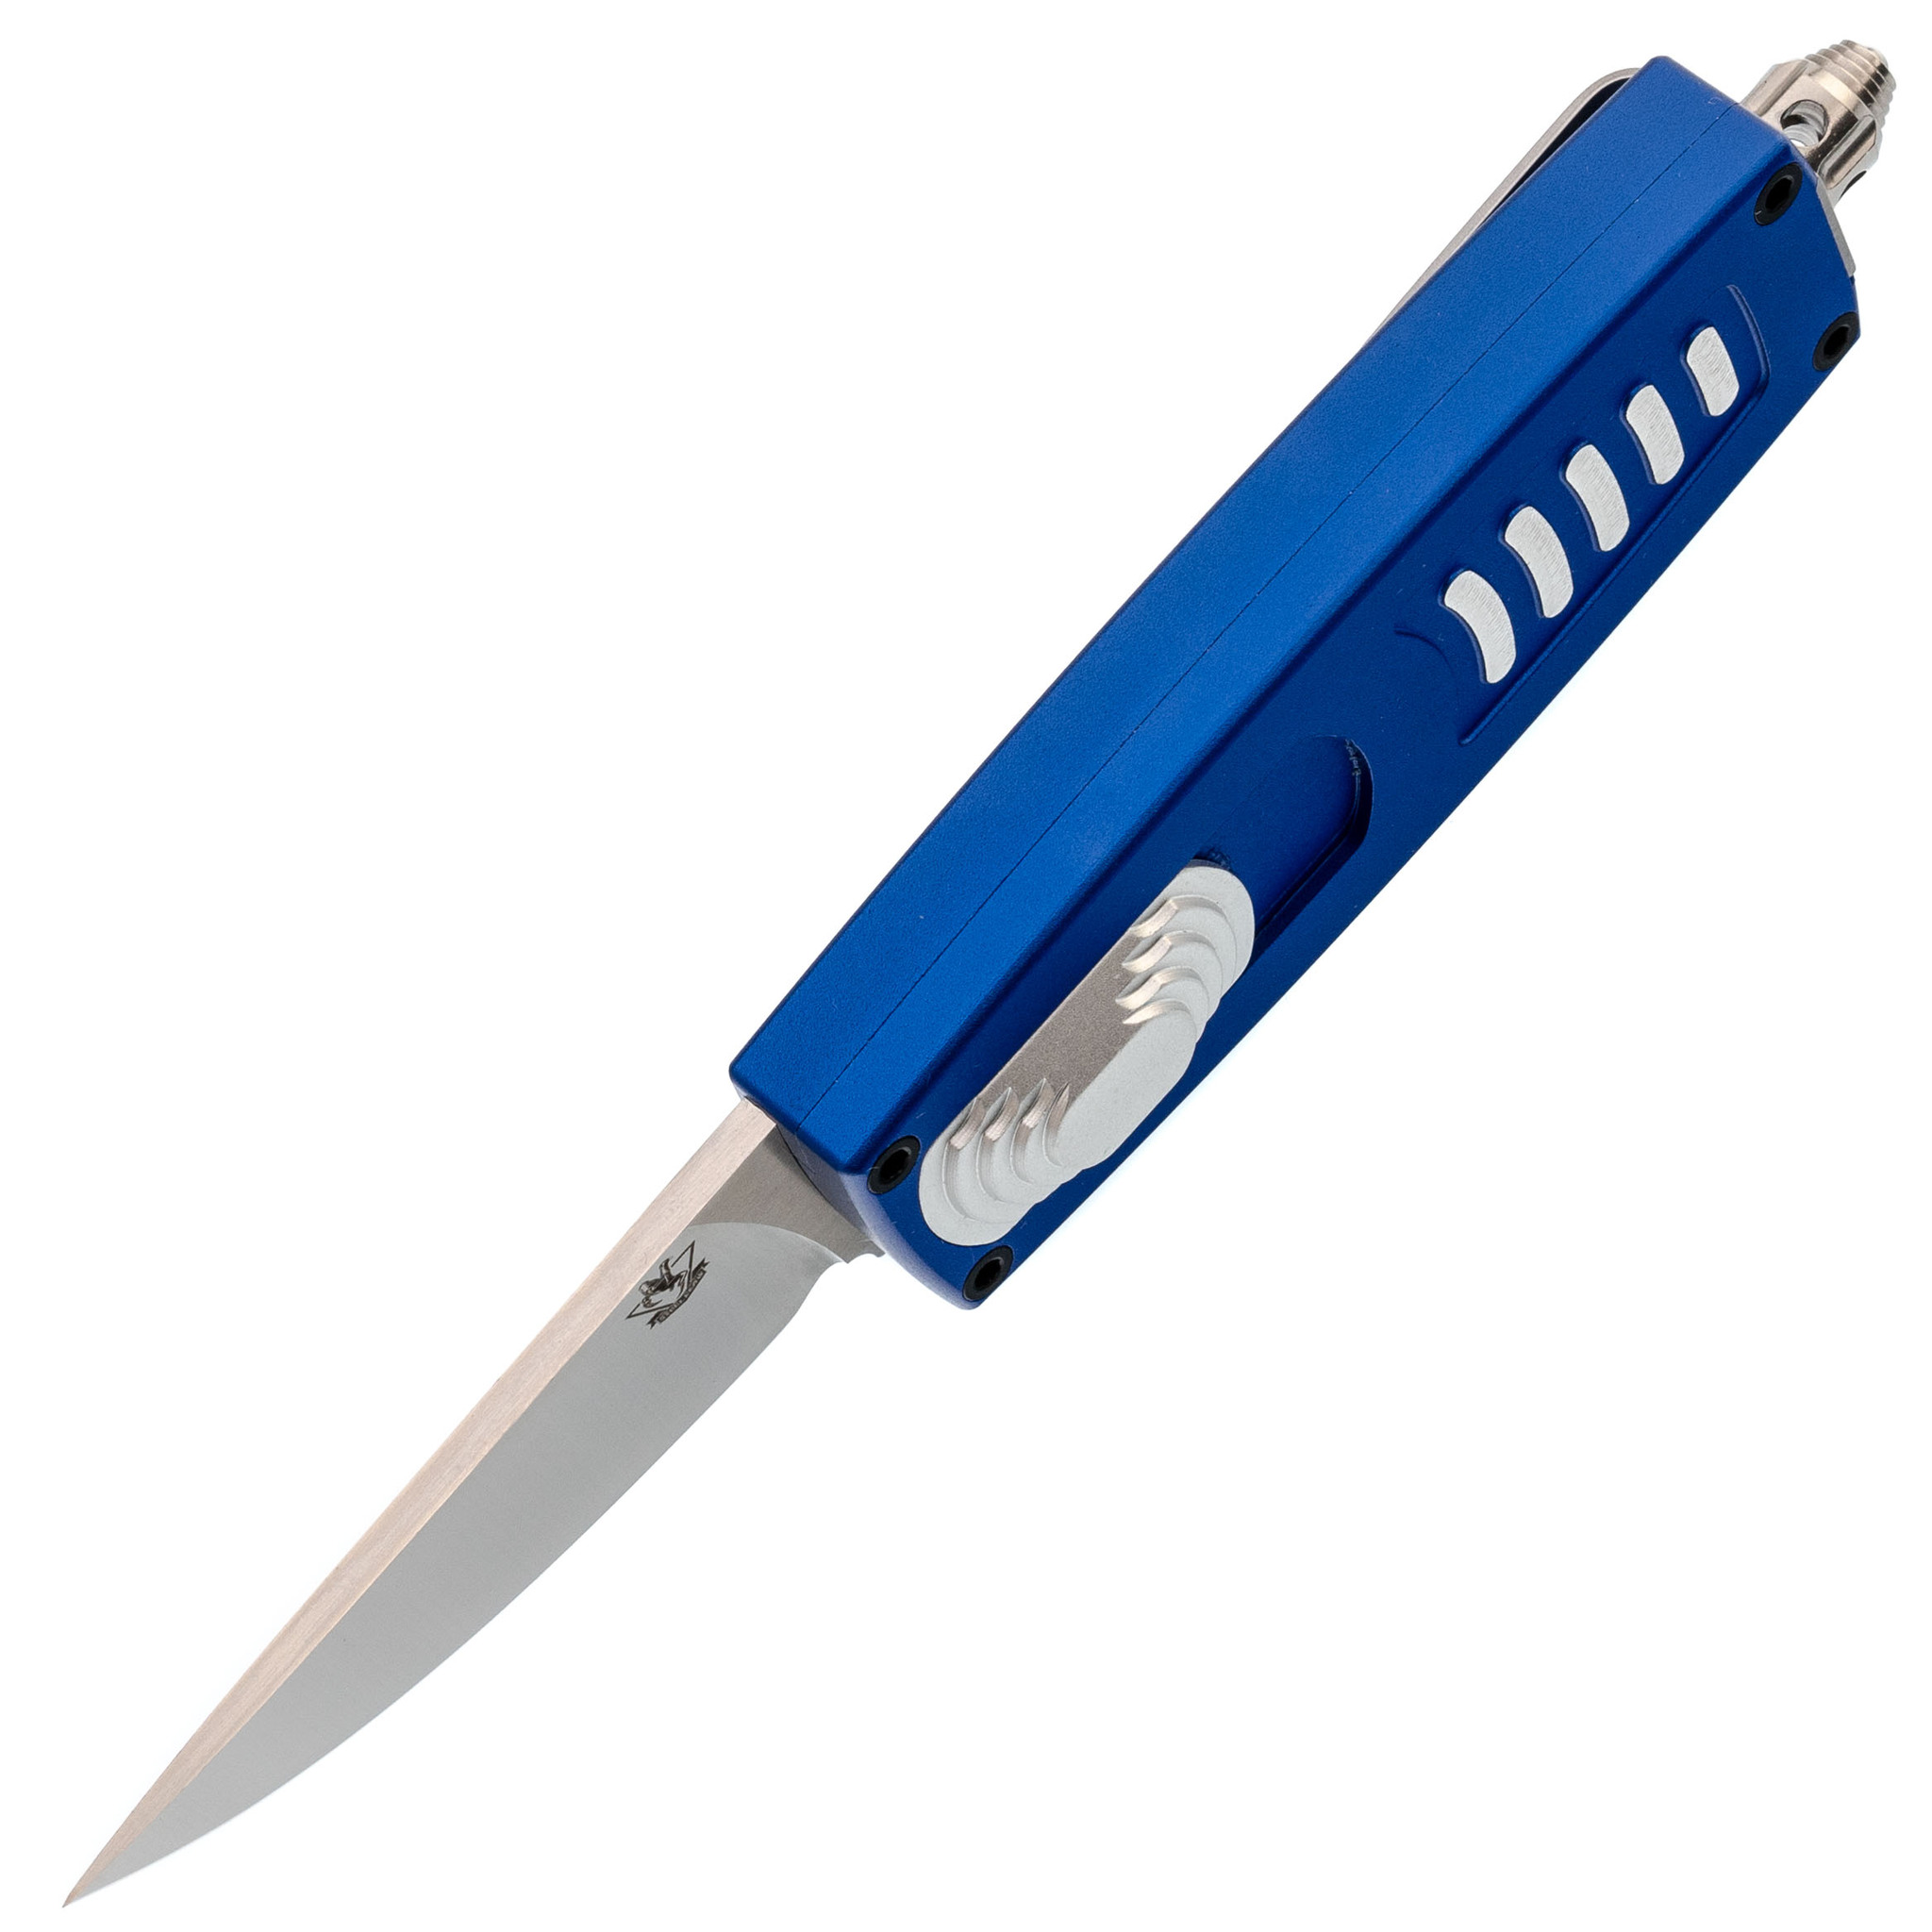 Автоматический нож Steelclaw Криптон-01, сталь D2, рукоять алюминий, синий - фото 2